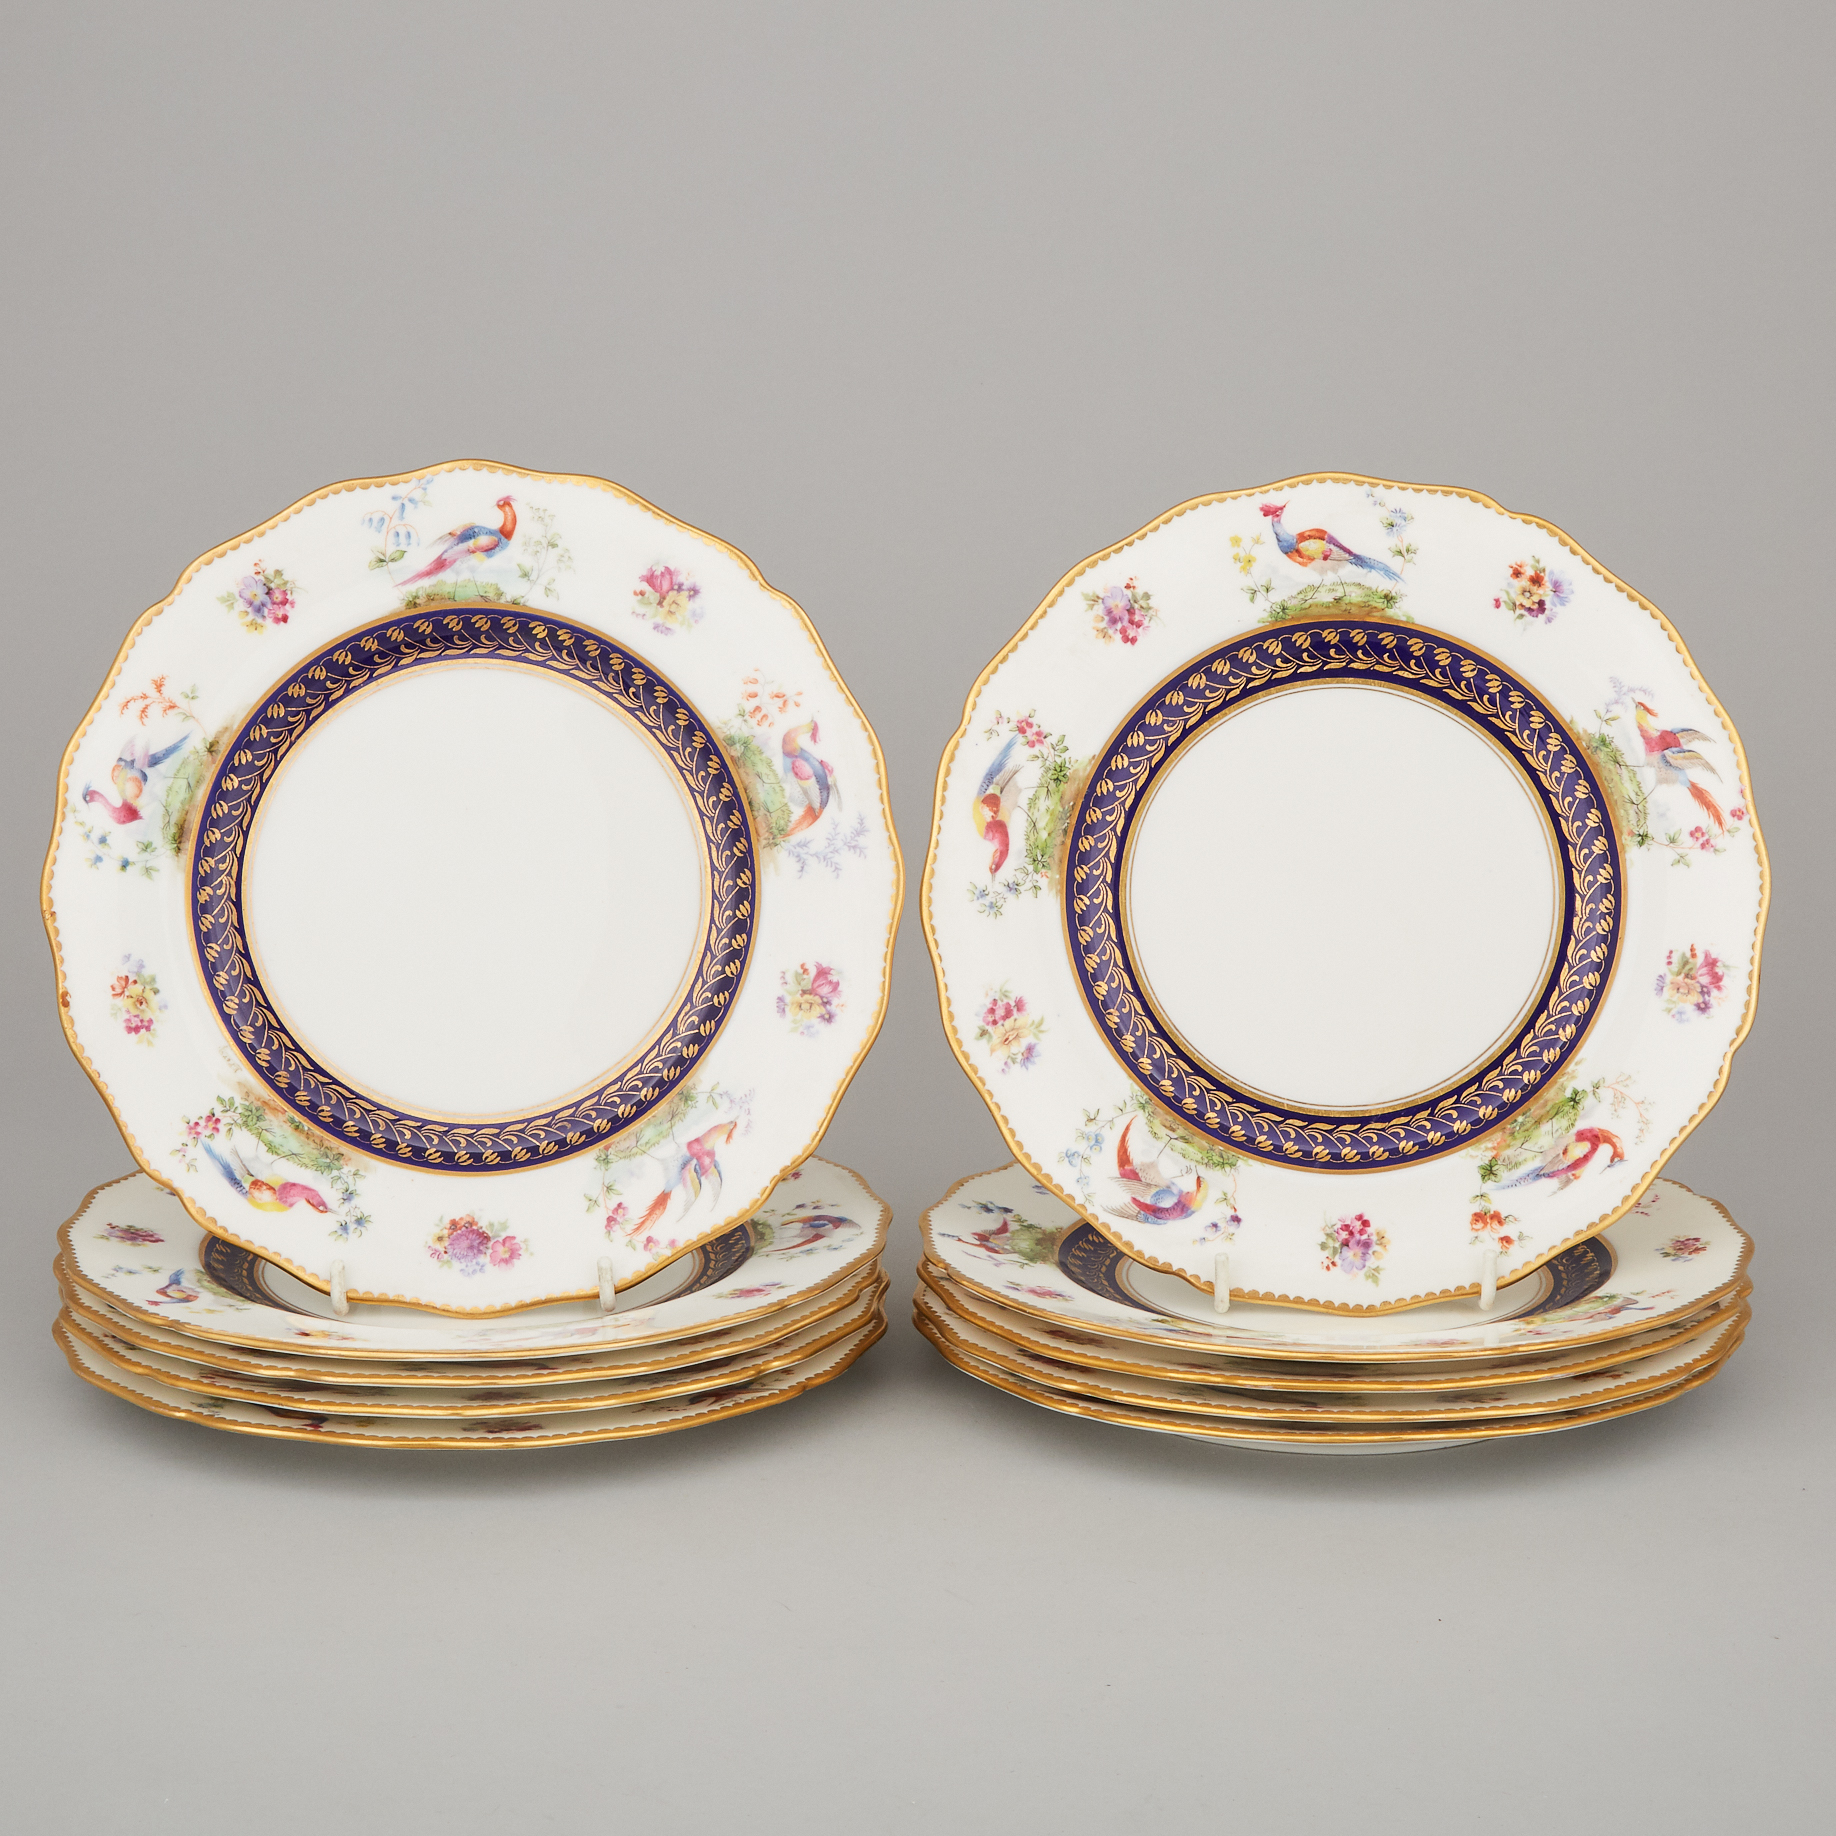 Ten Royal Doulton Dessert Plates, 1902-22